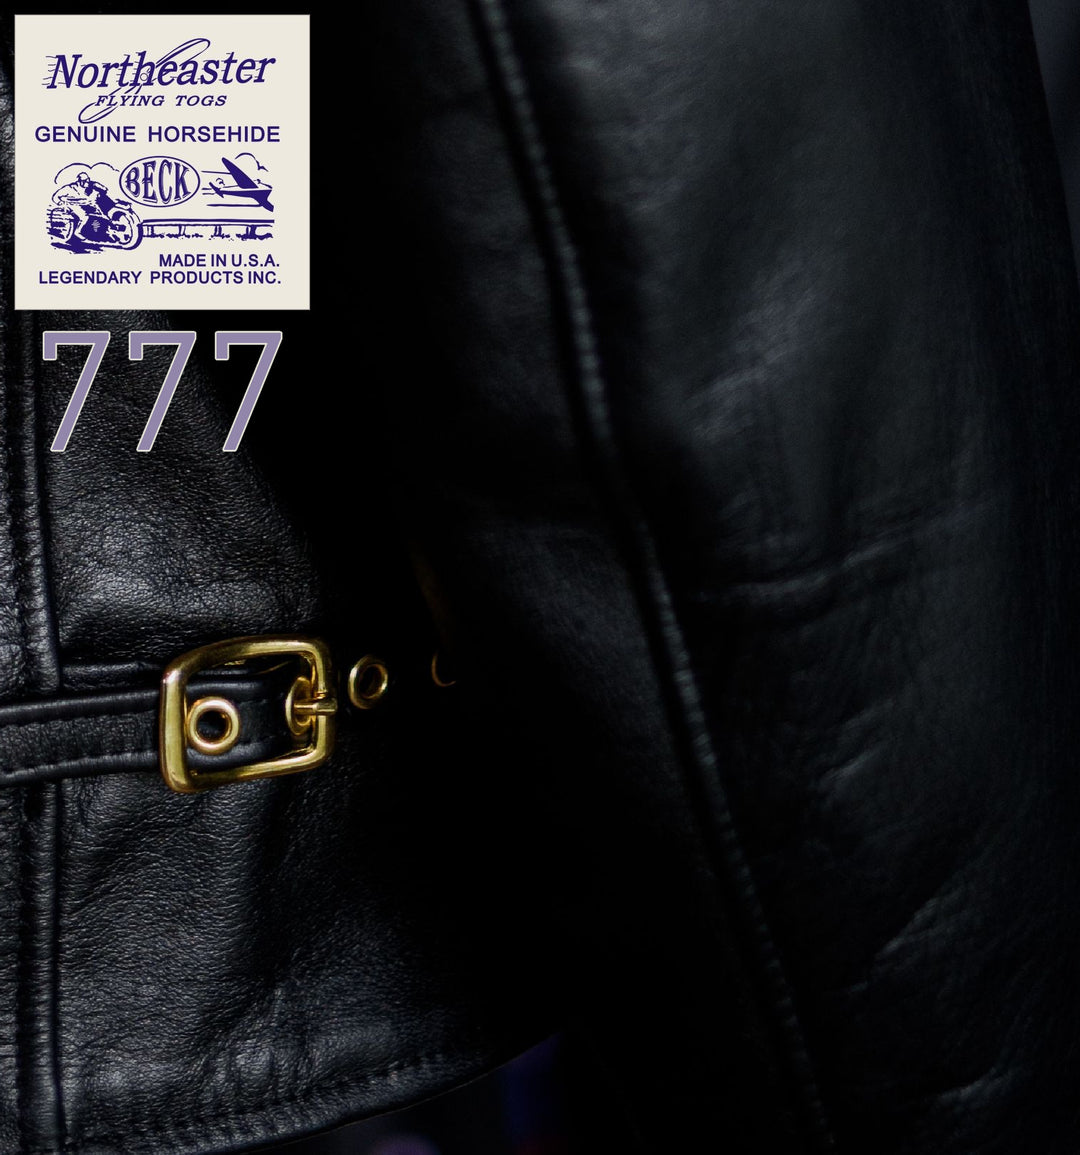 BECK™ 777 Northeaster Flying Togs Genuine Horsehide Motorcycle Jacket (PRE-SALE 2 WEEKS ETA)